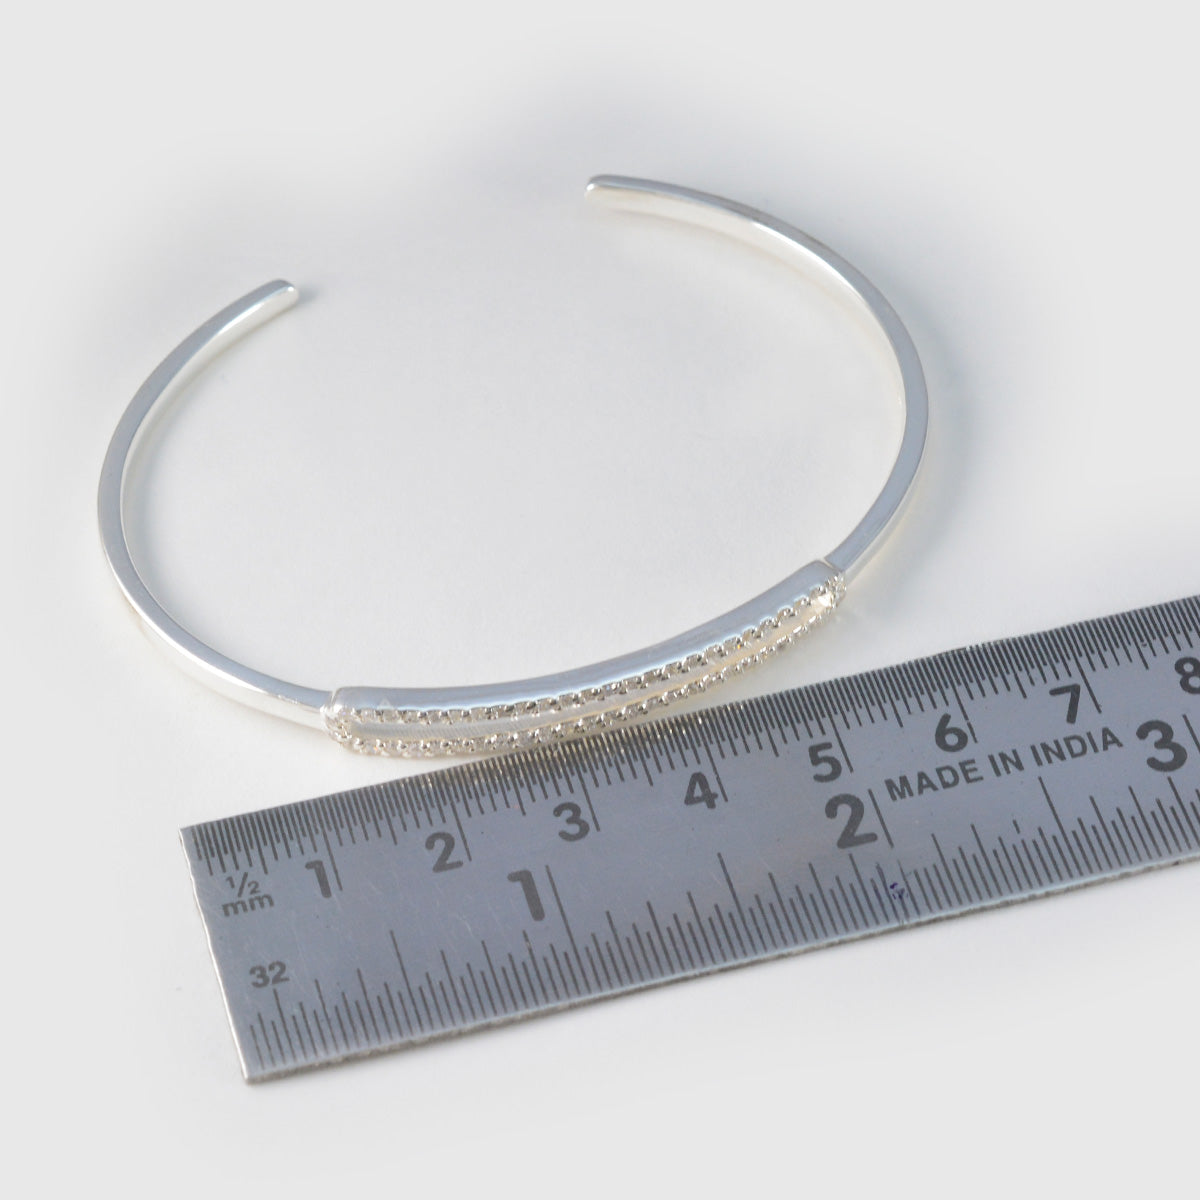 riyo красивый браслет из стерлингового серебра 925 пробы для женщин, белый браслет с цирконием, установка безеля, браслет, браслет, размер l, 6-8,5 дюймов.